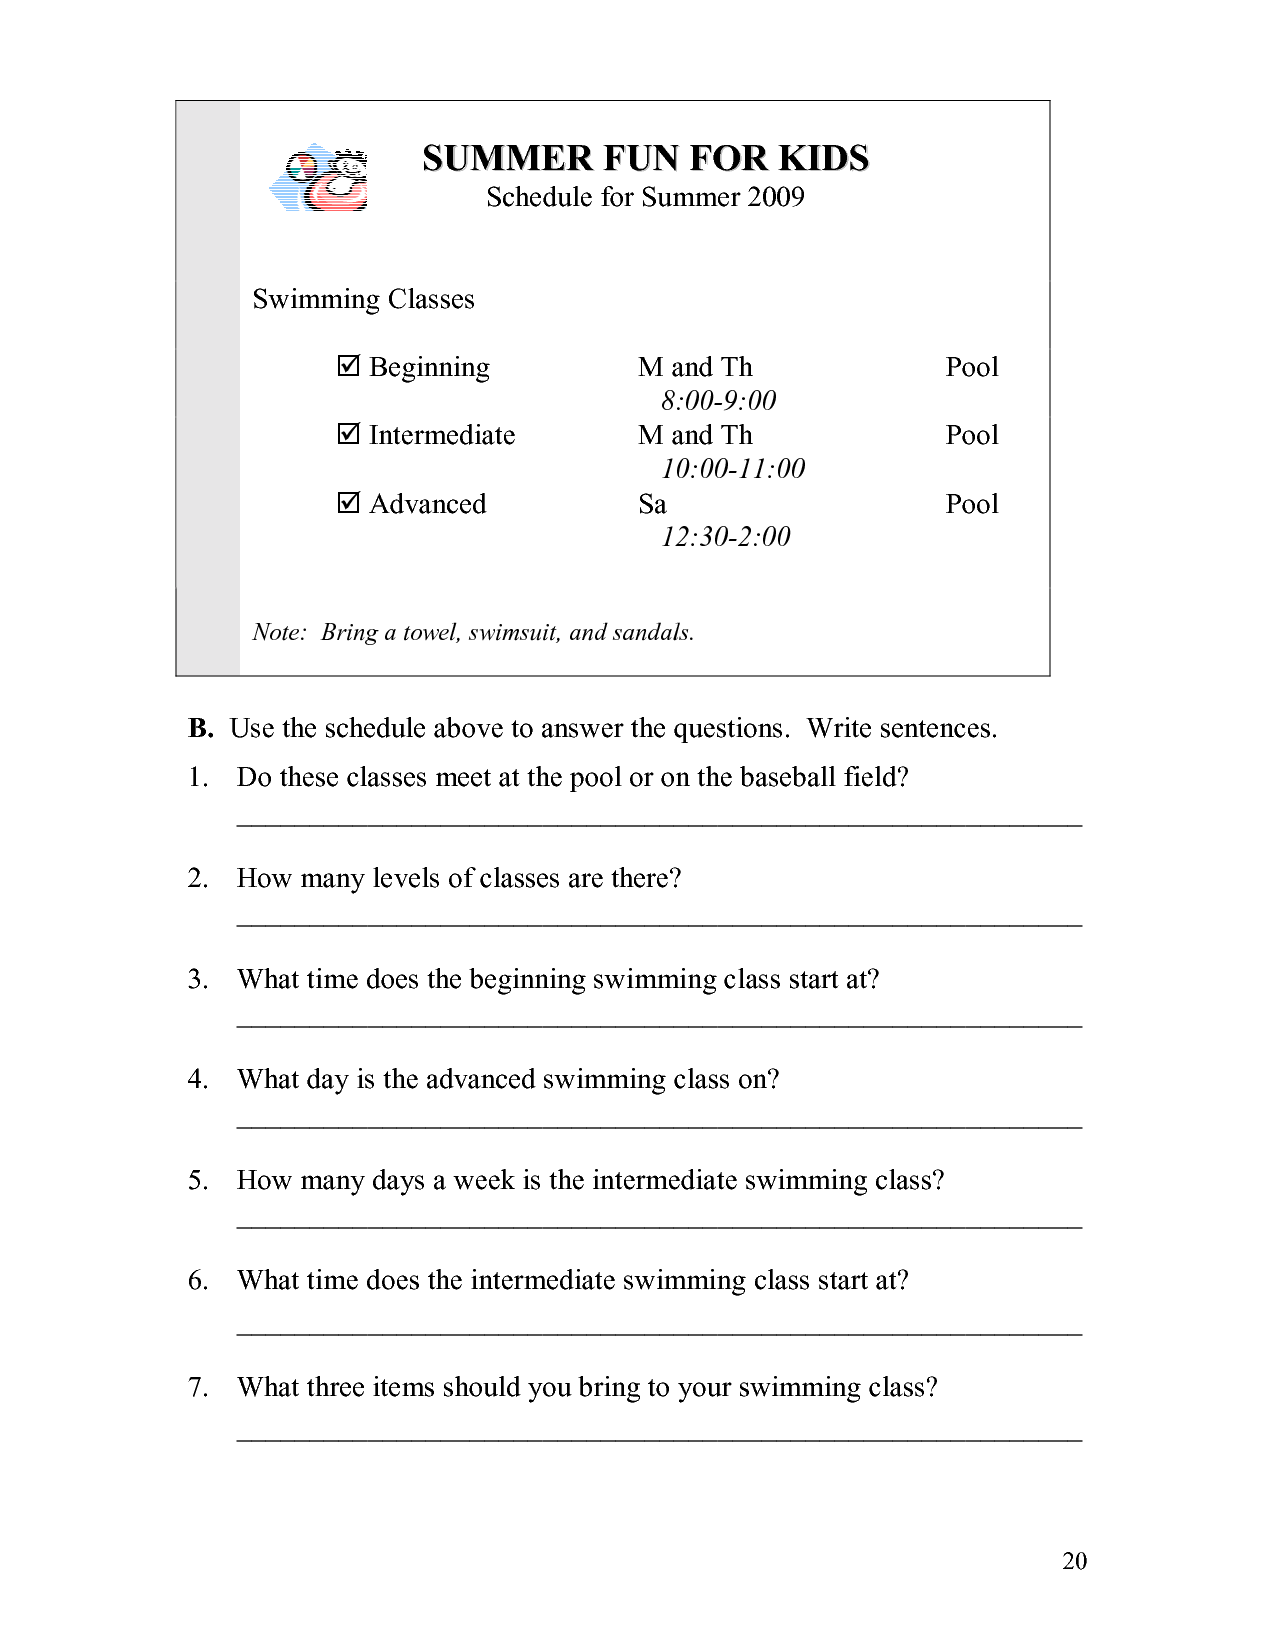 ESL Grammar Worksheets for Kids Image